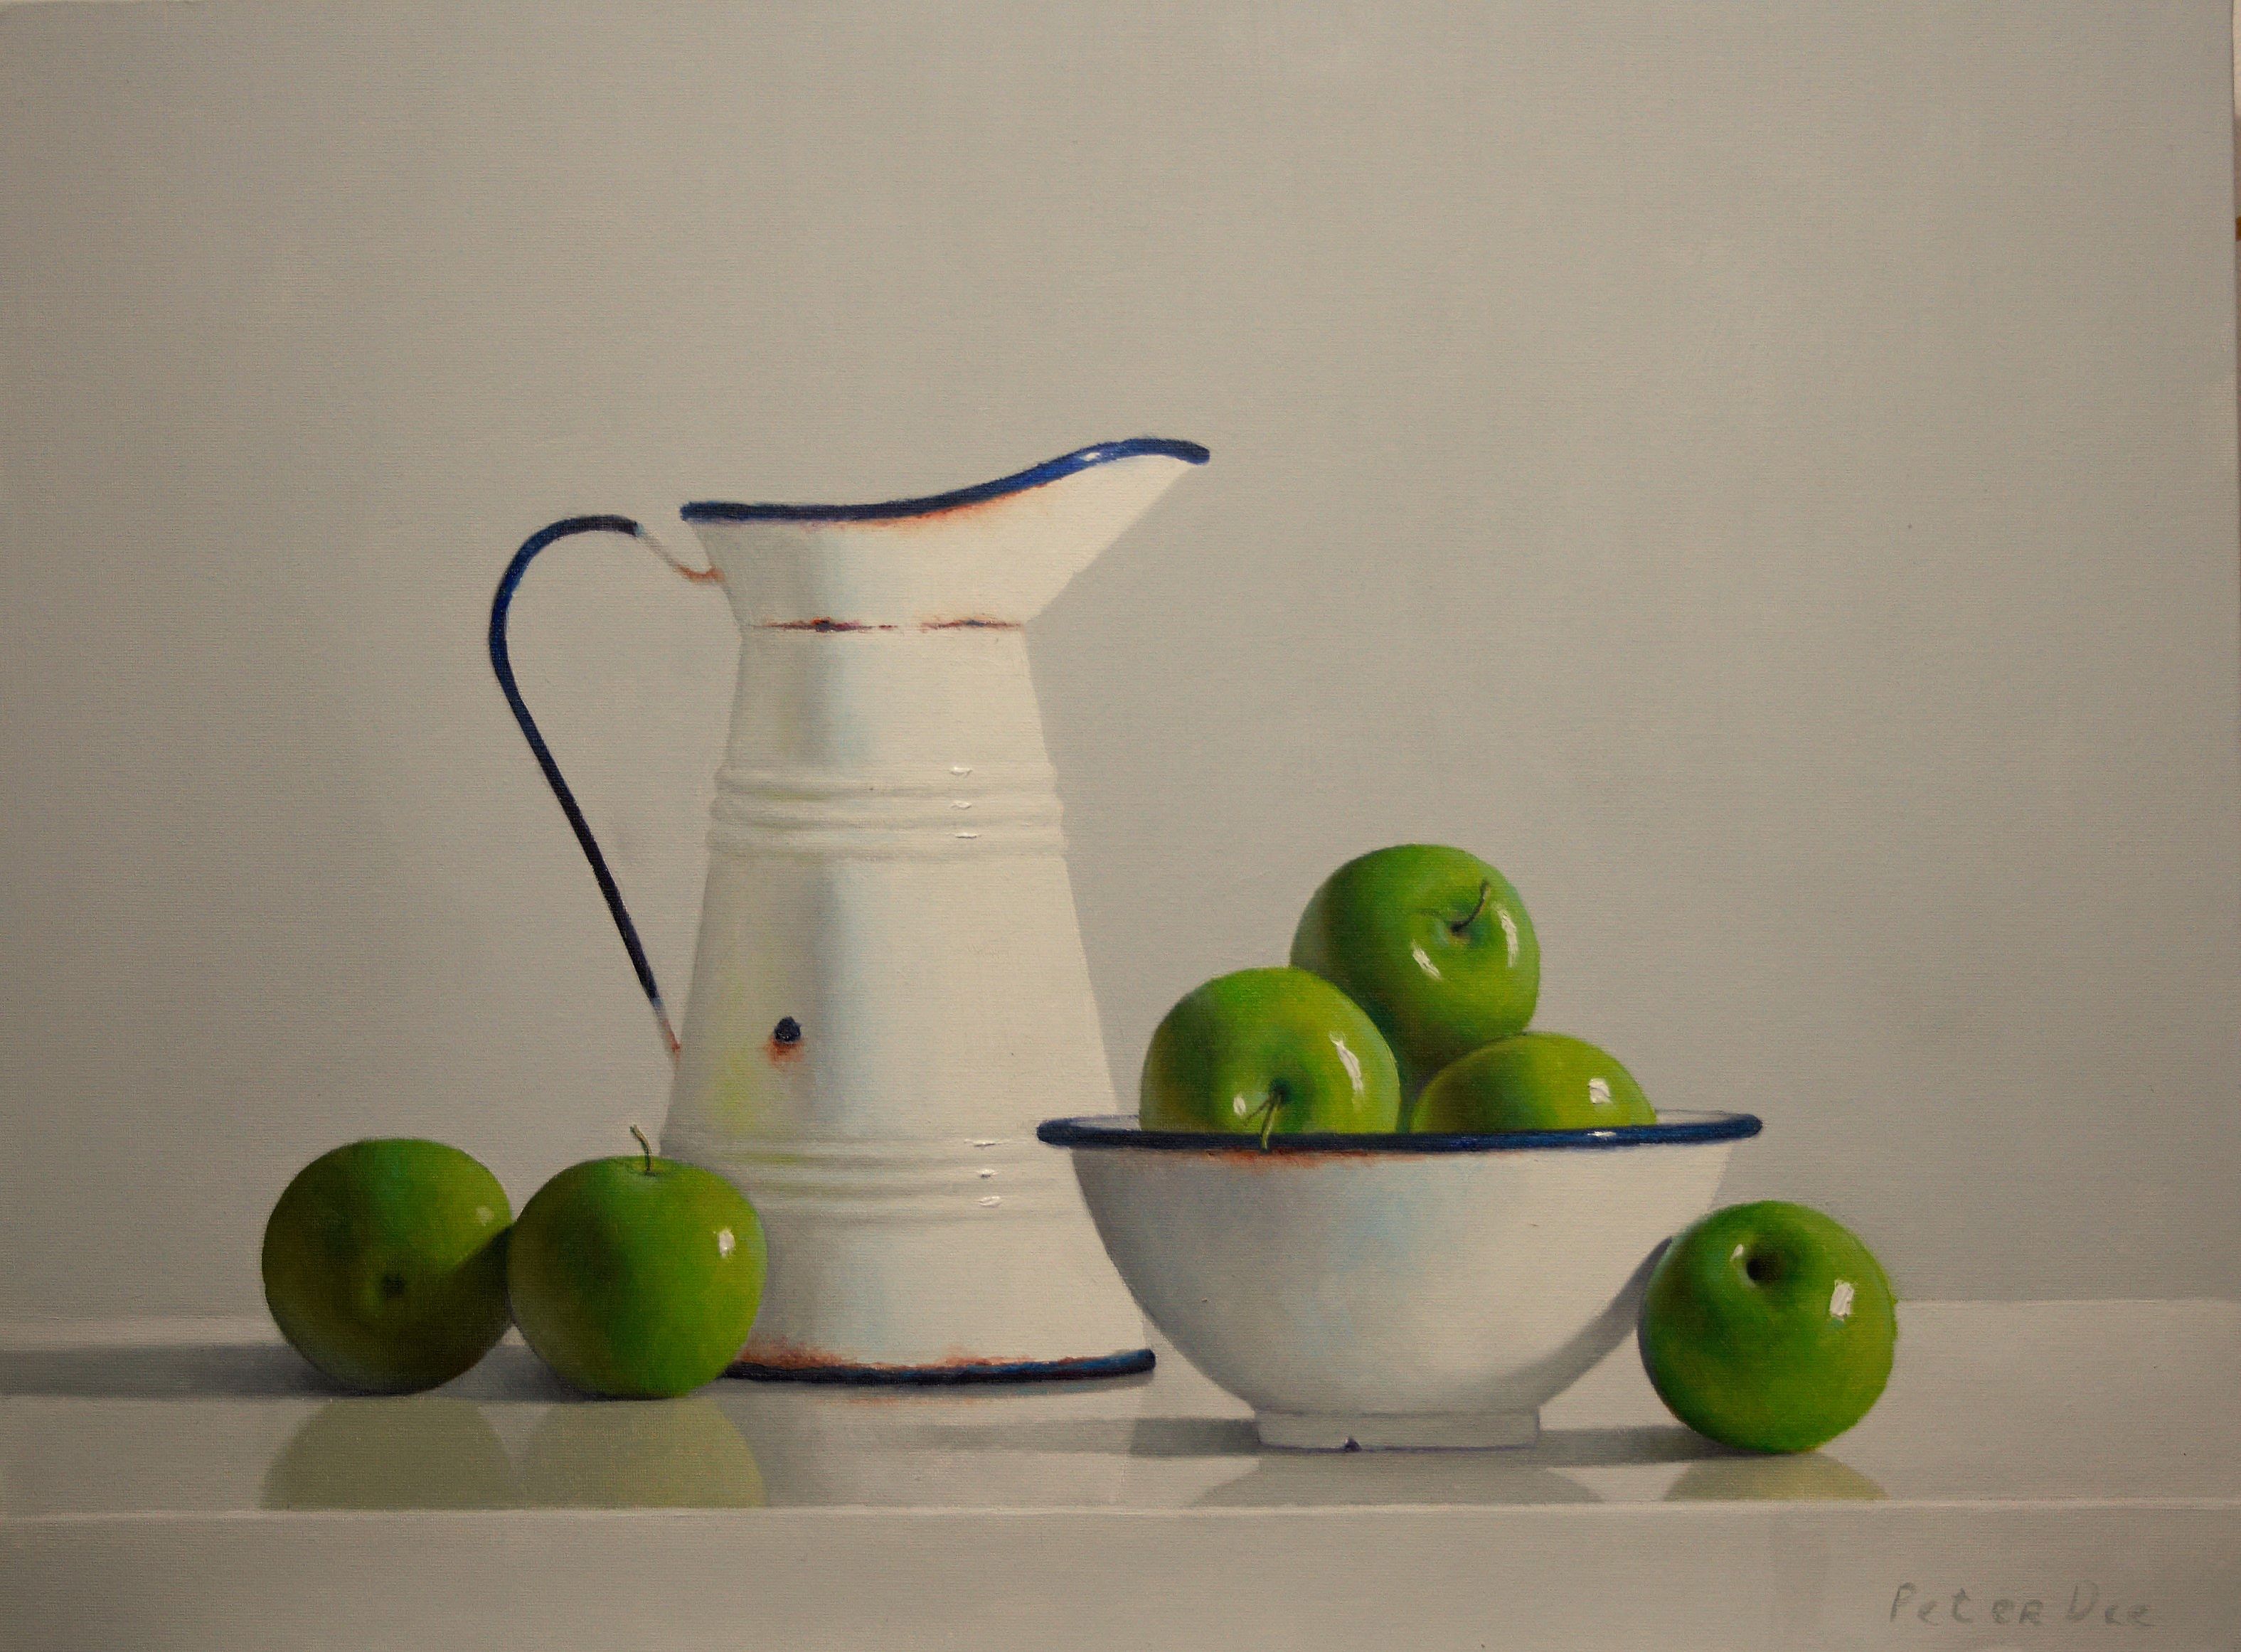 Peter Dee - Vintage Enamelware with Green Apples